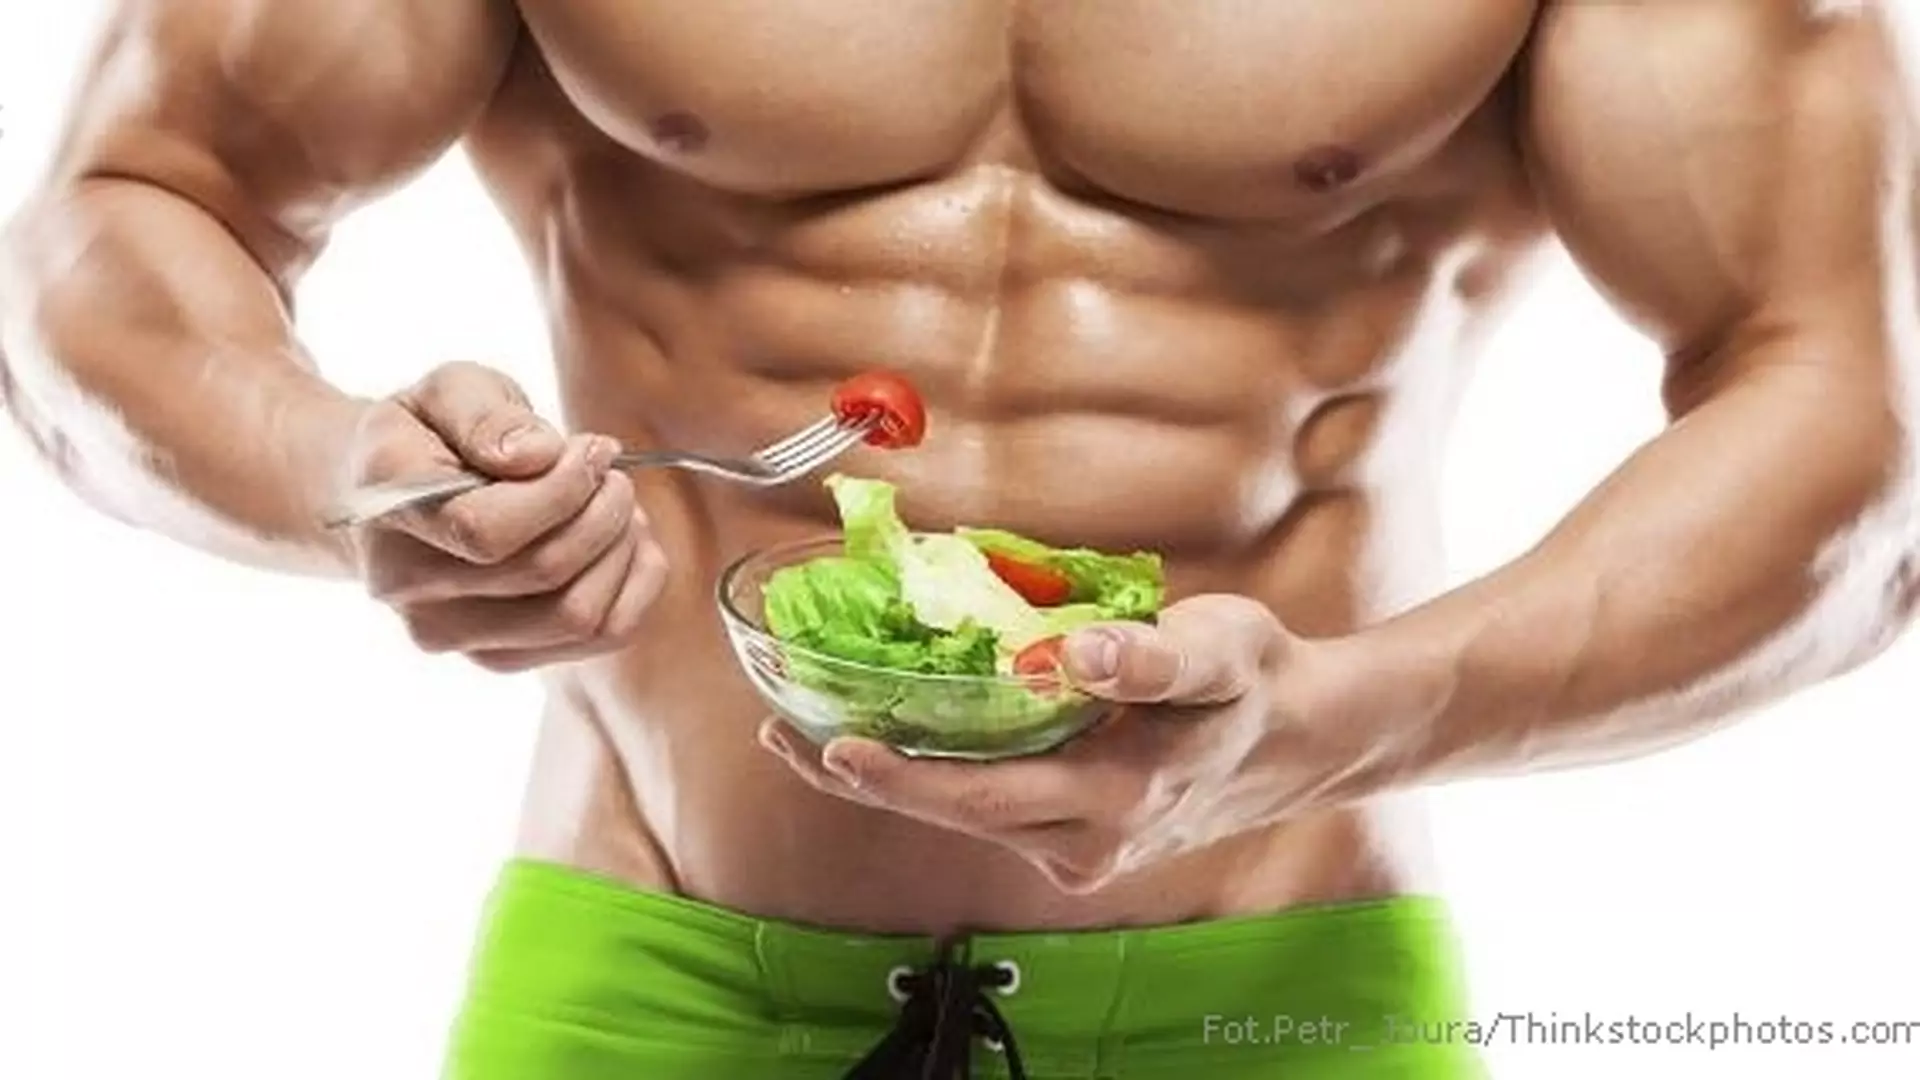 Buduj mięśnie, trać kilogramy: dieta odchudzająca dla mężczyzny